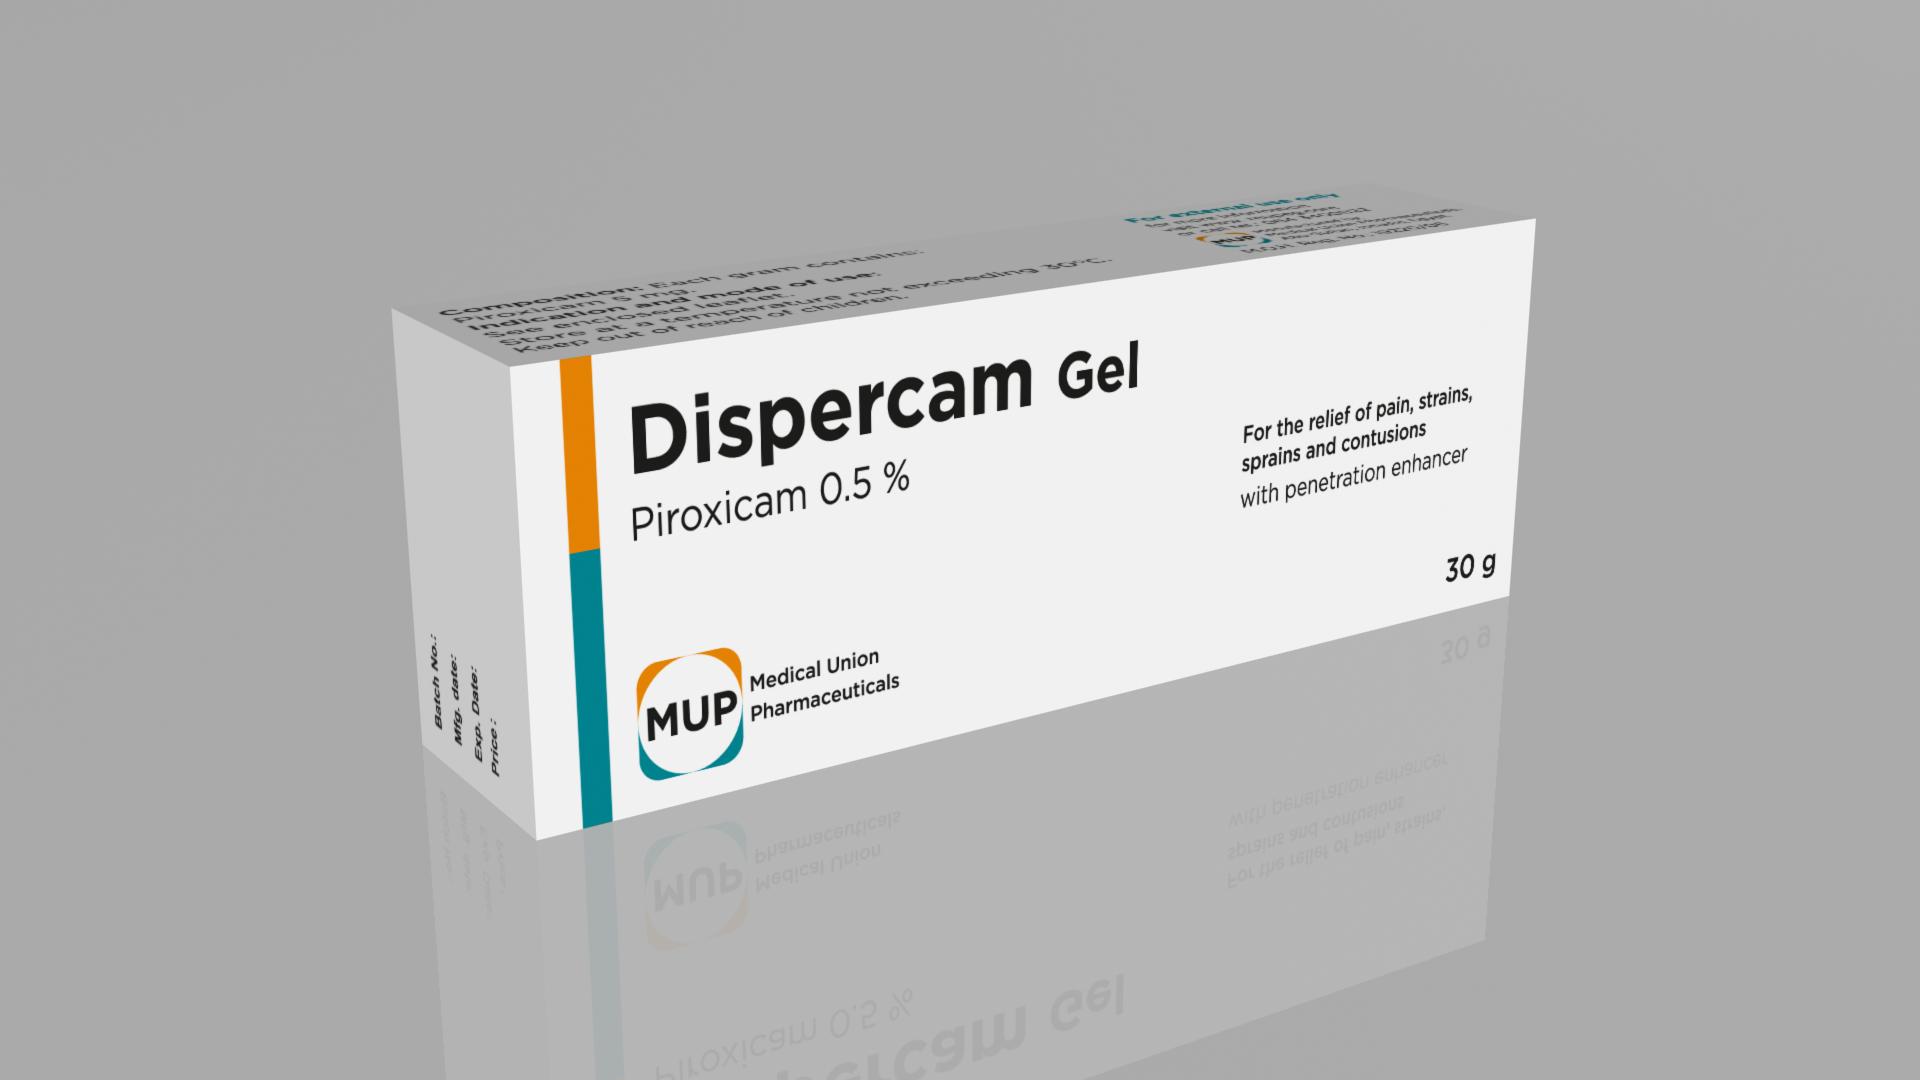 Dispercam هو  أجود دواء للعضلات والعظام وف مرتفعته في إزالة التورم في المفاصل